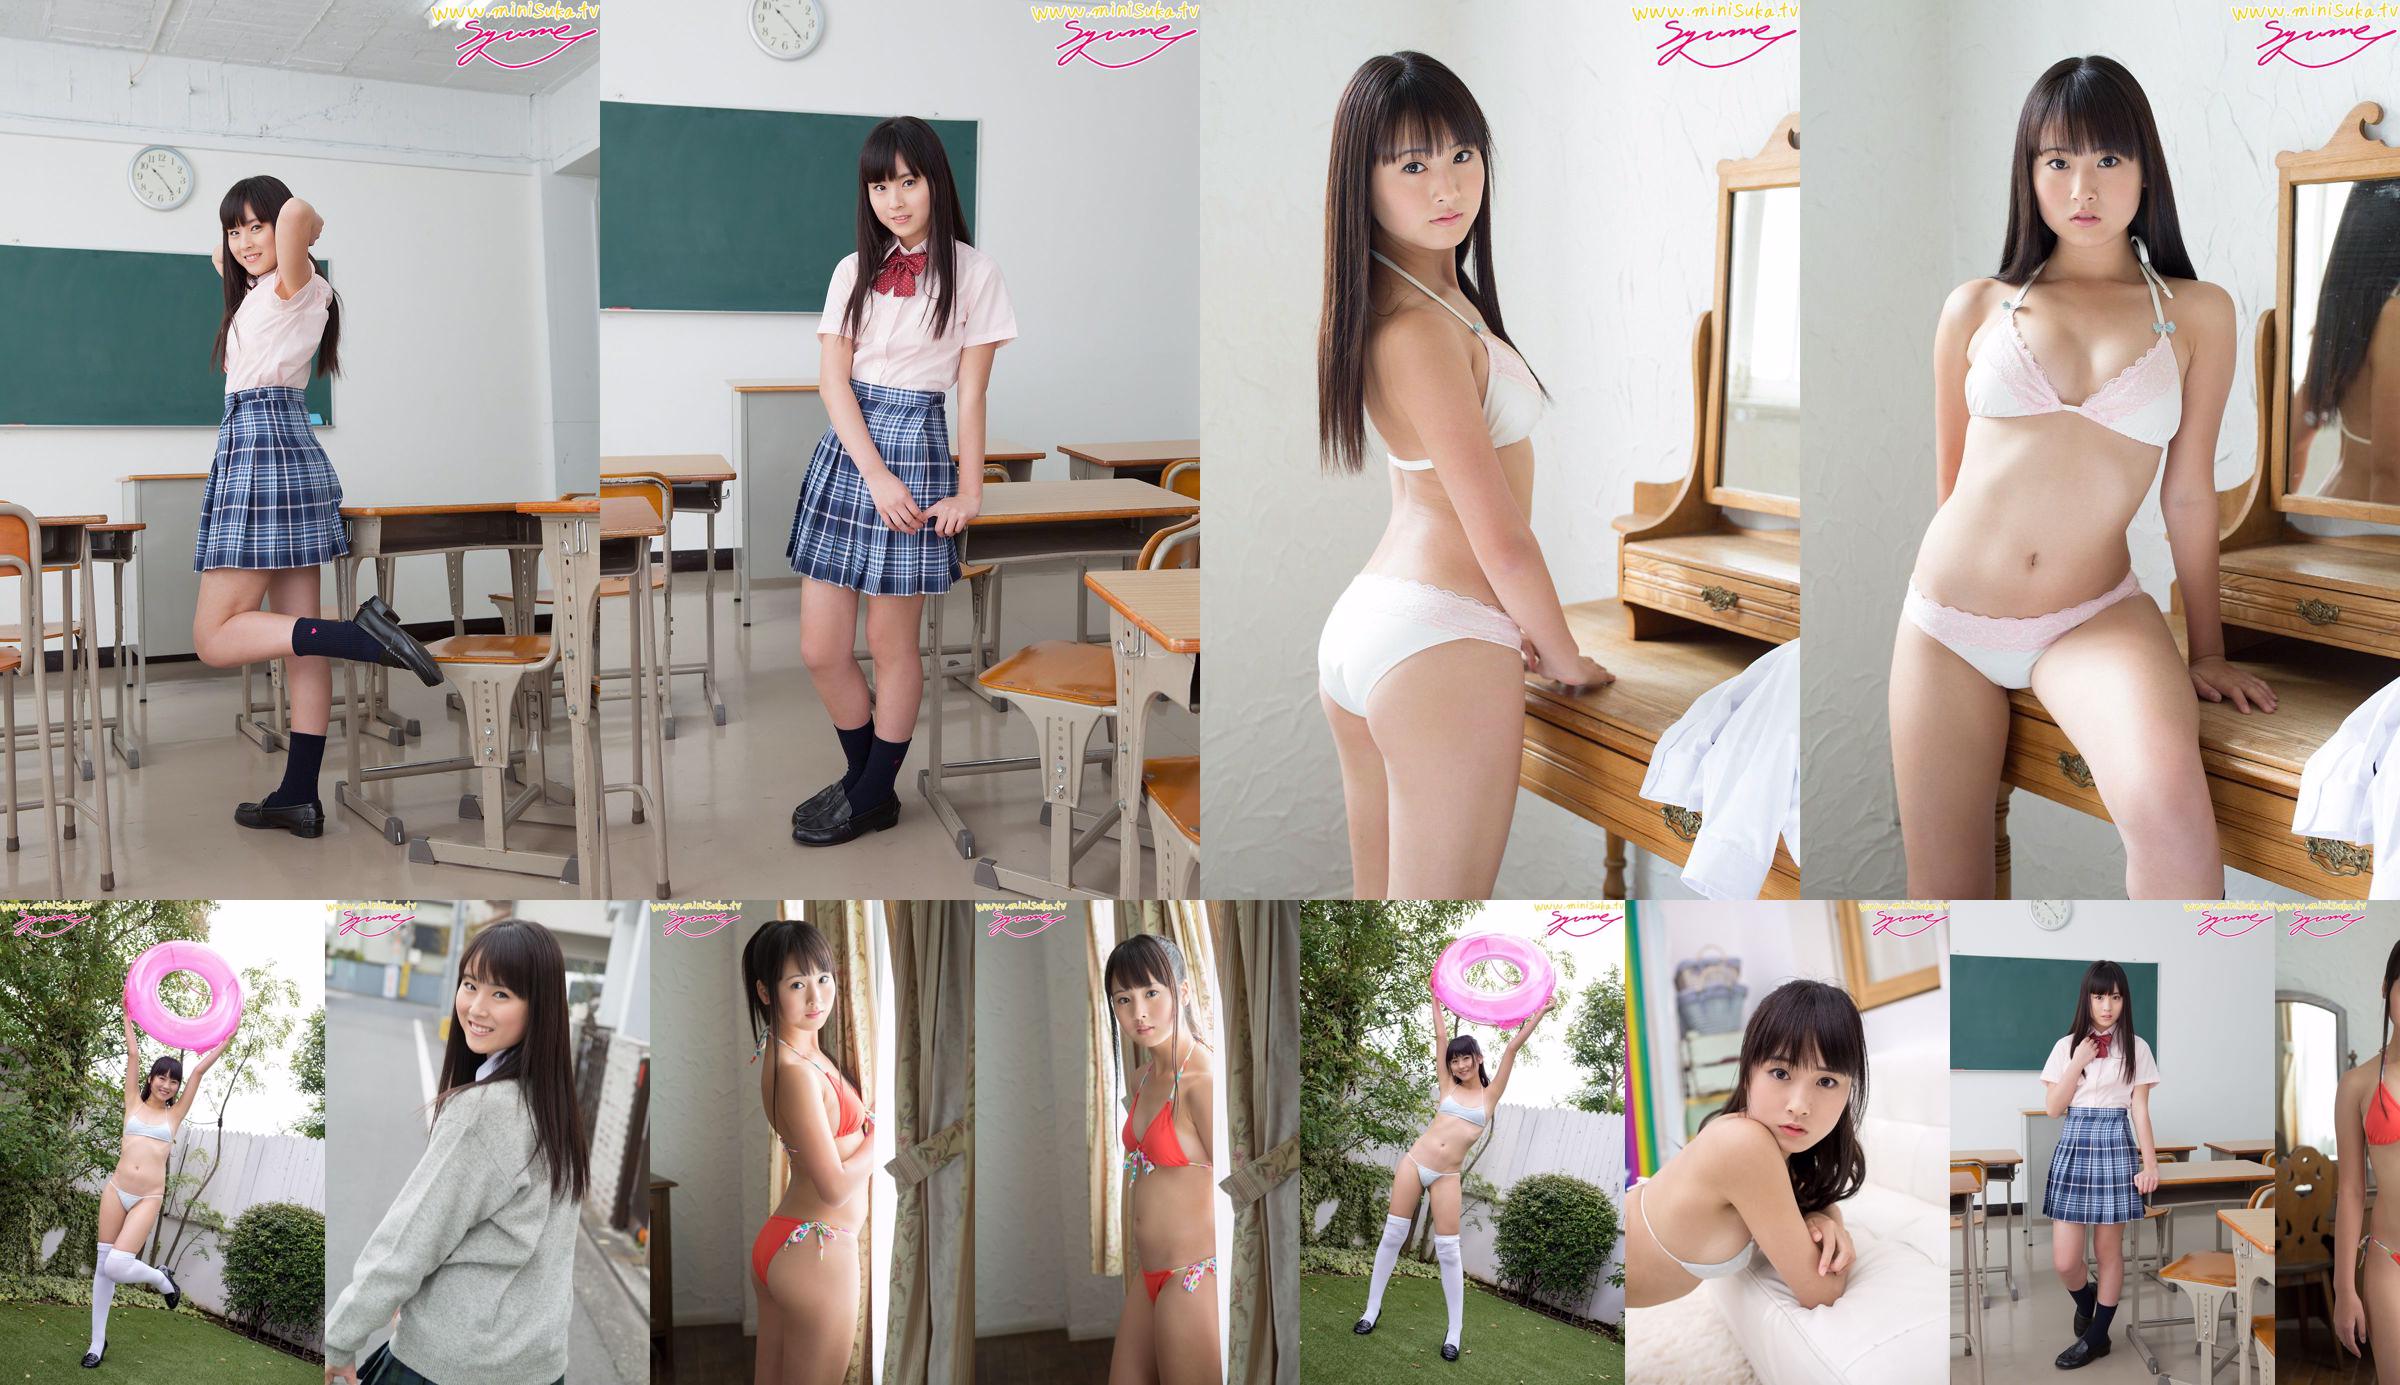 ยูเมะชินโจนักเรียนมัธยมหญิงประจำการ [Minisuka.tv] No.f24a30 หน้า 1